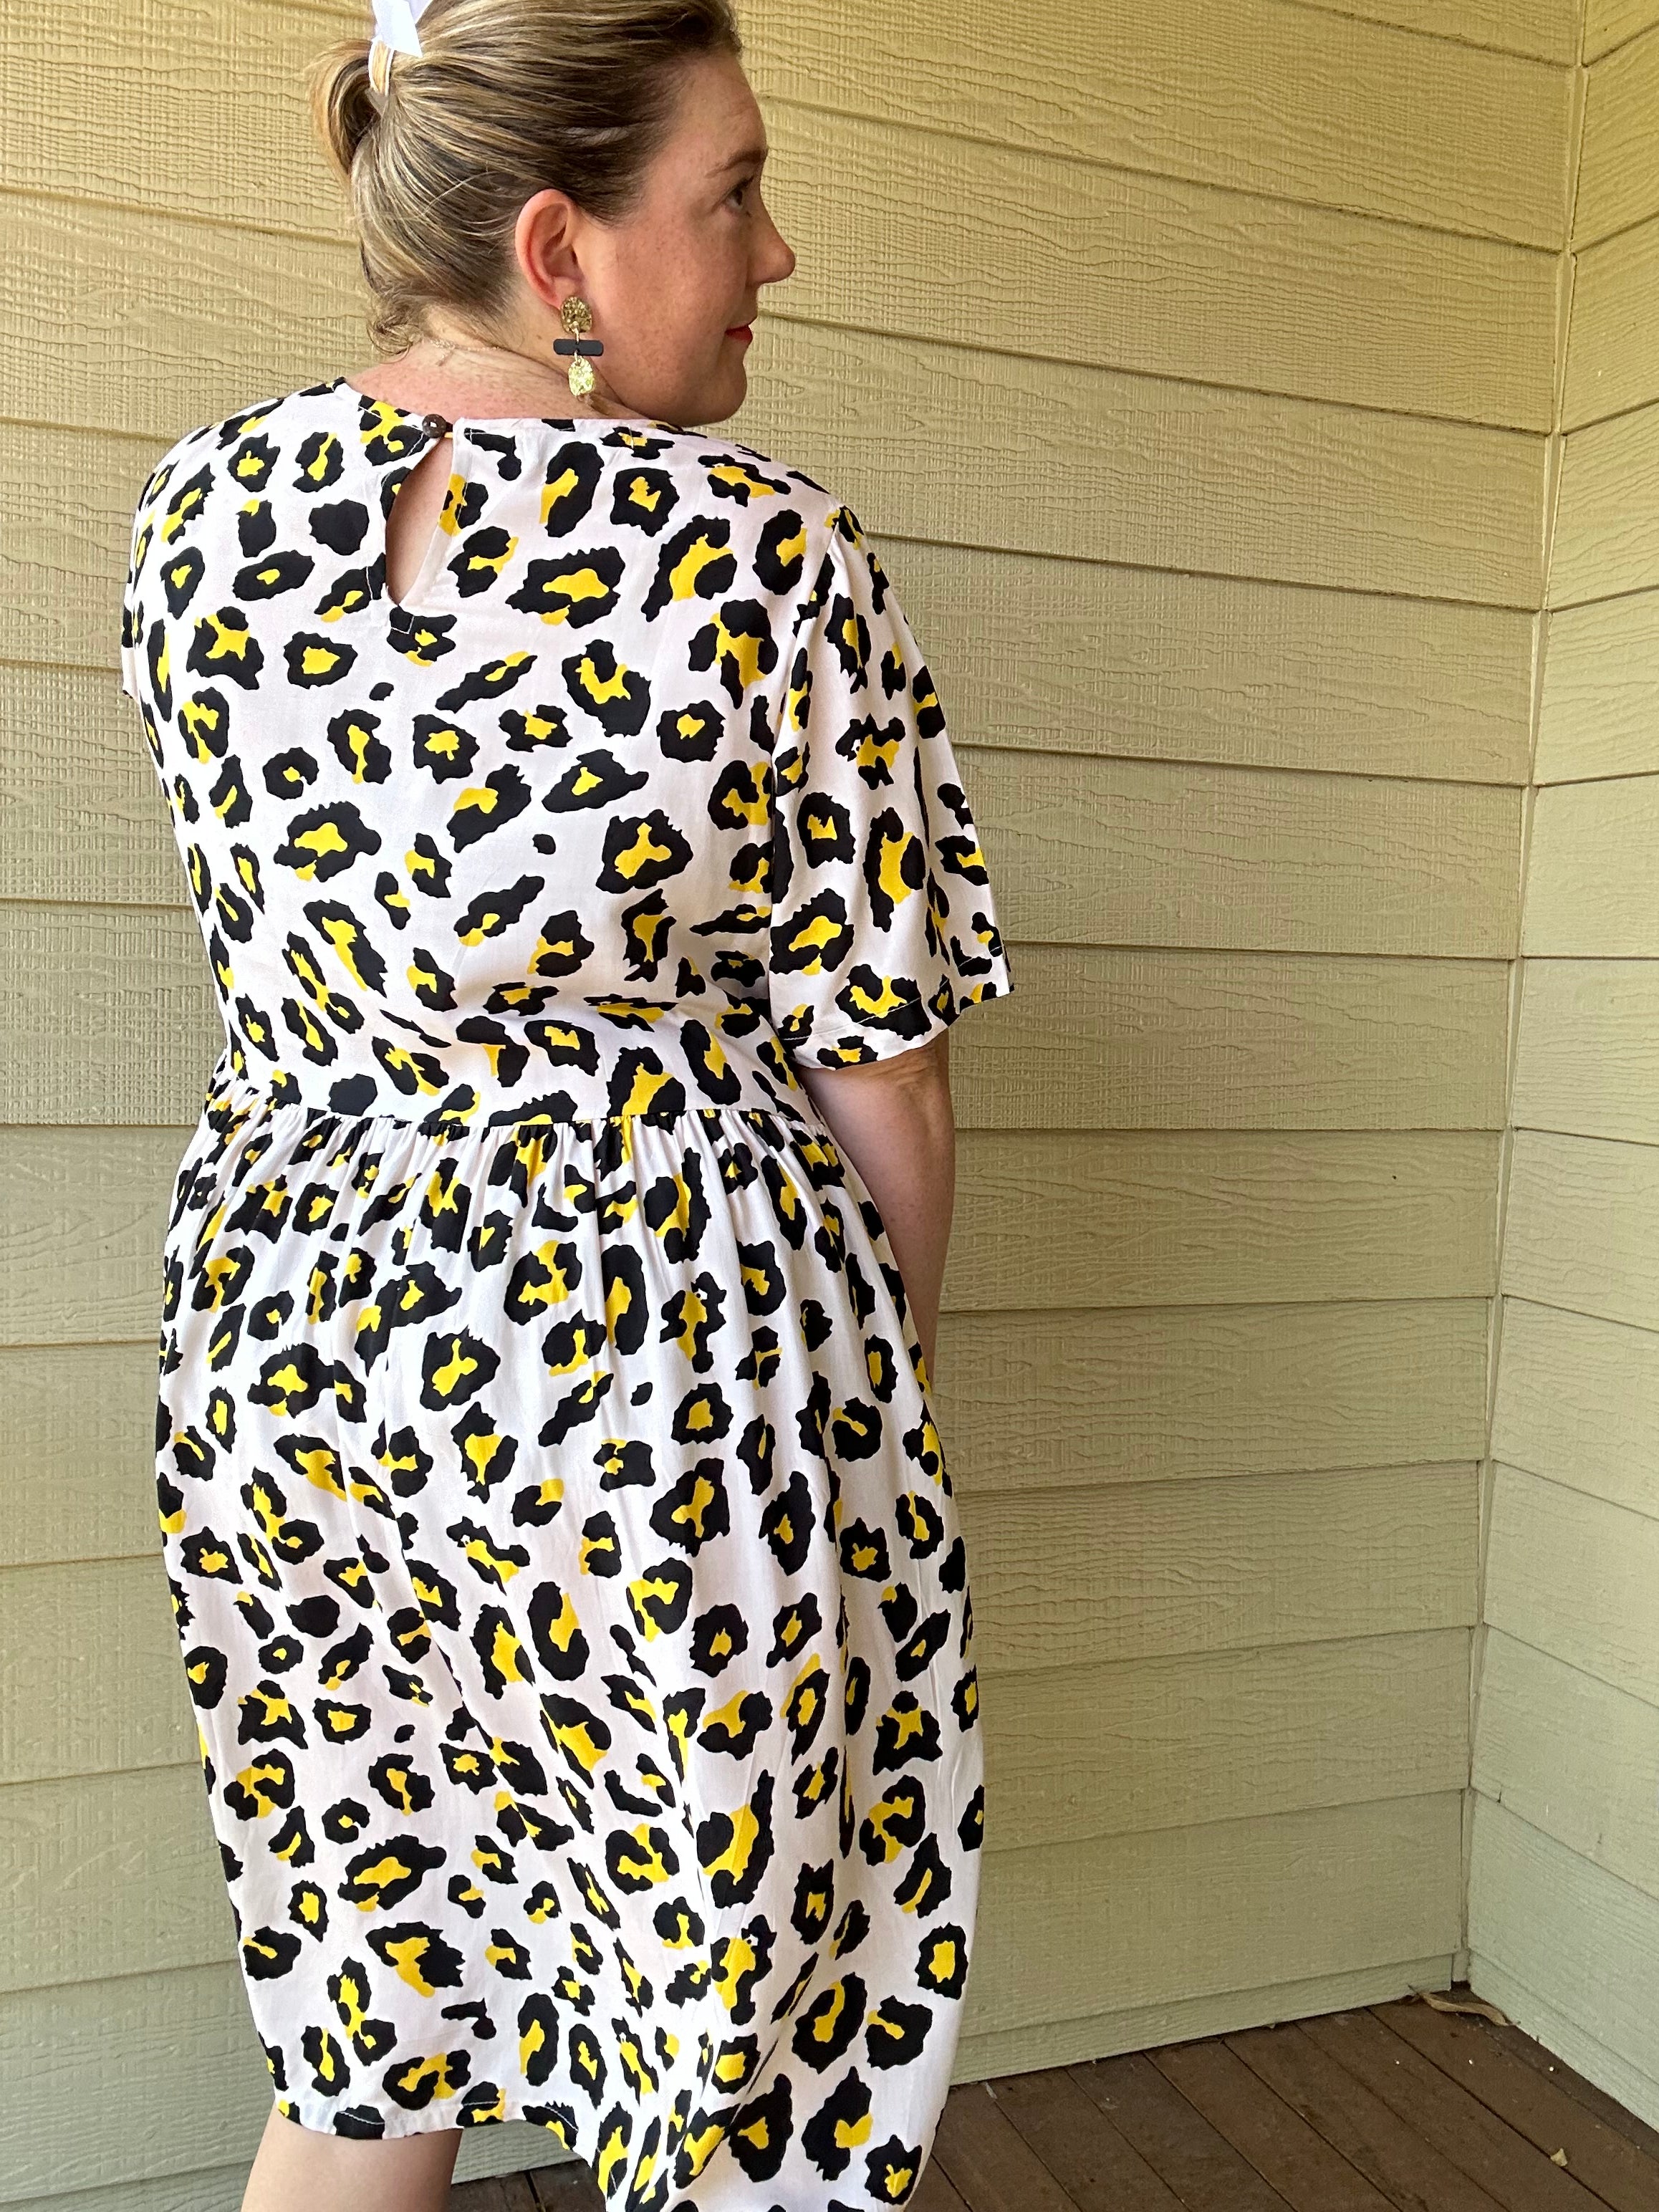 Leopard Belle Dress